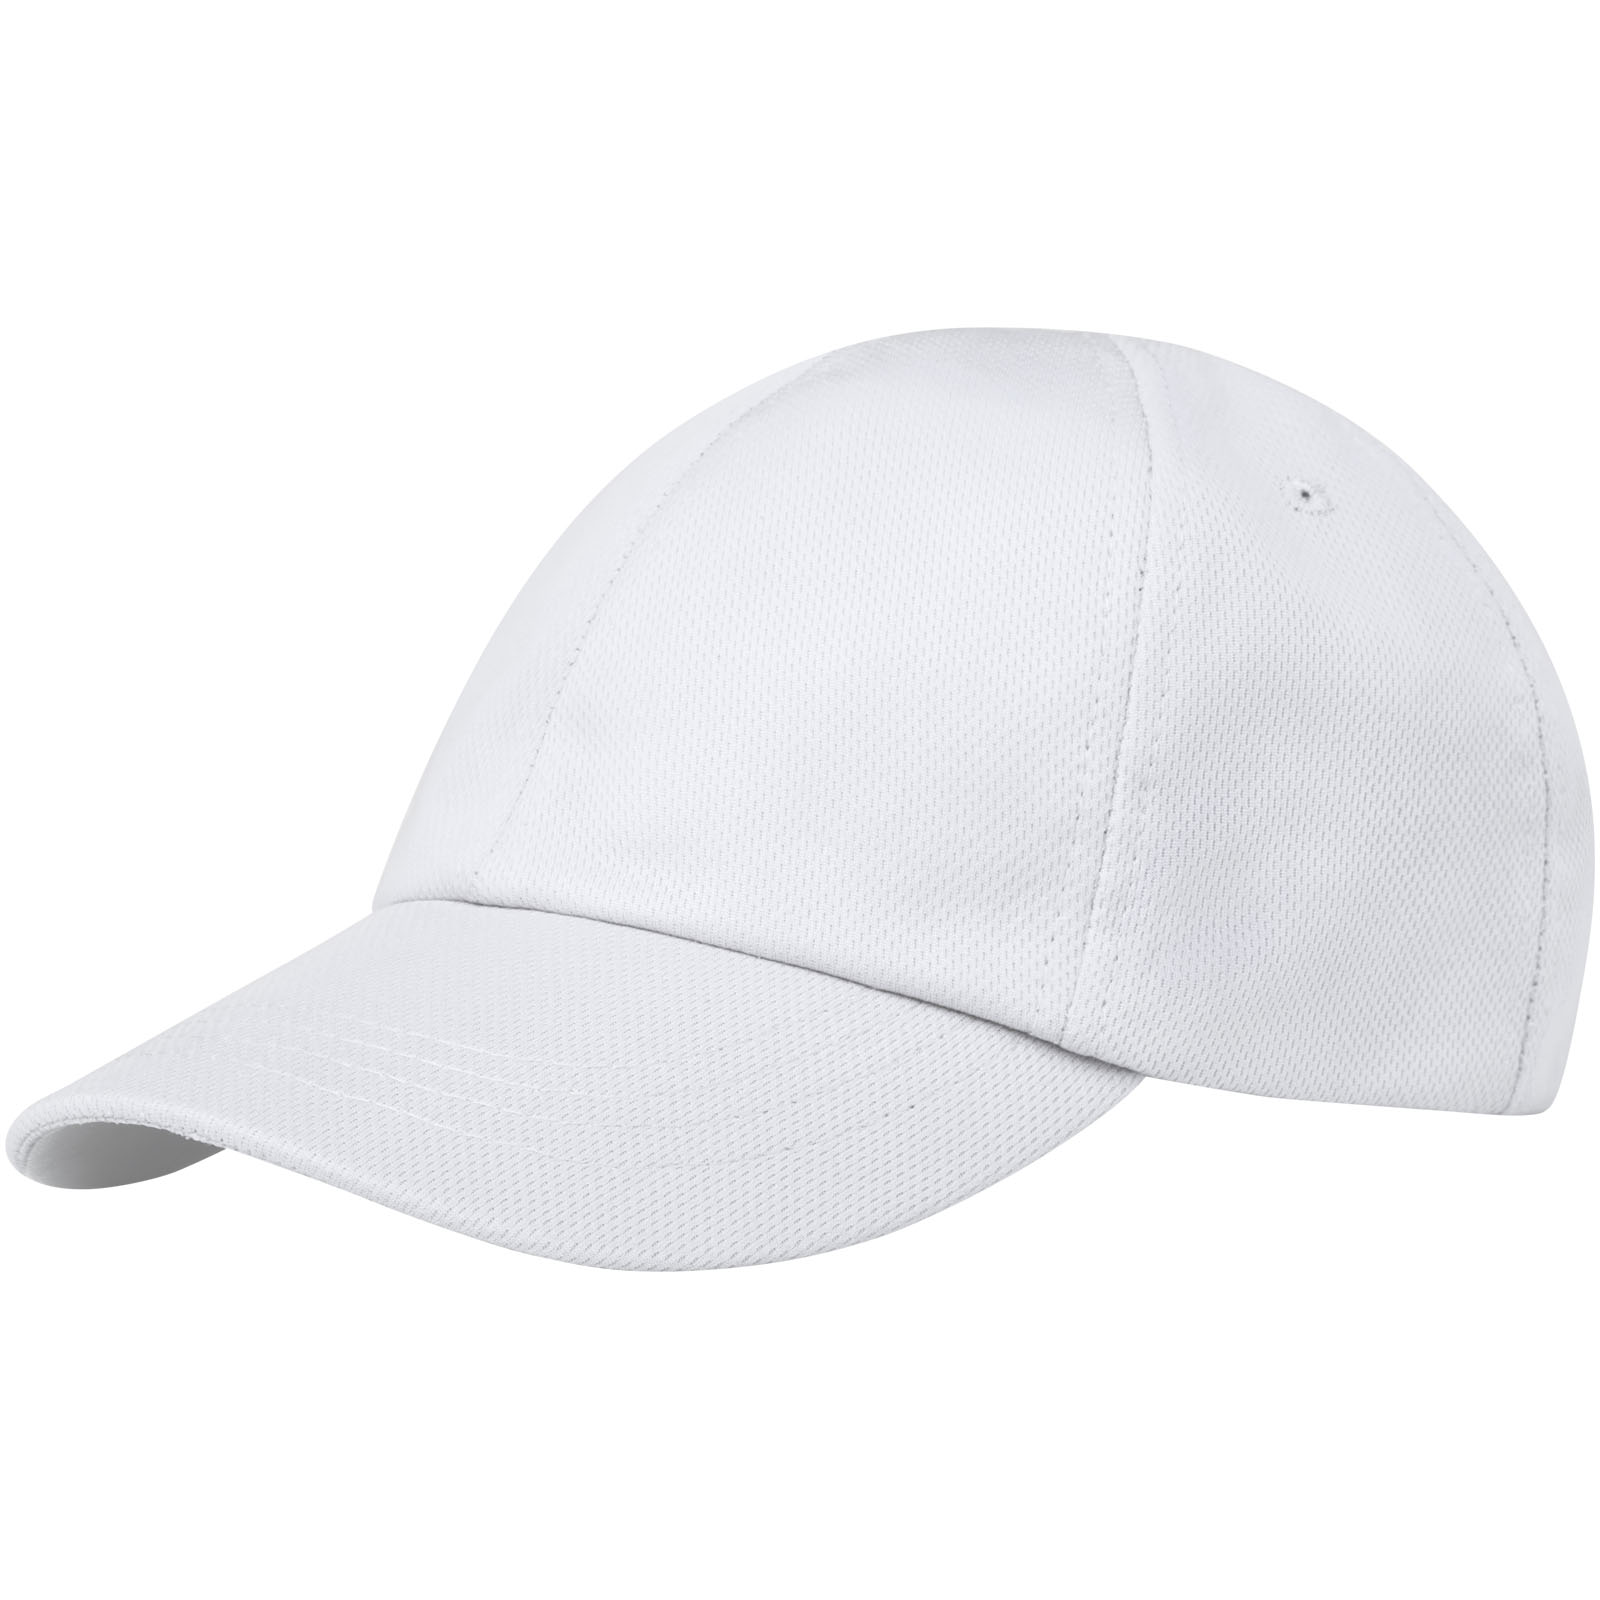 Caps & Hats - Cerus 6 panel cool fit cap